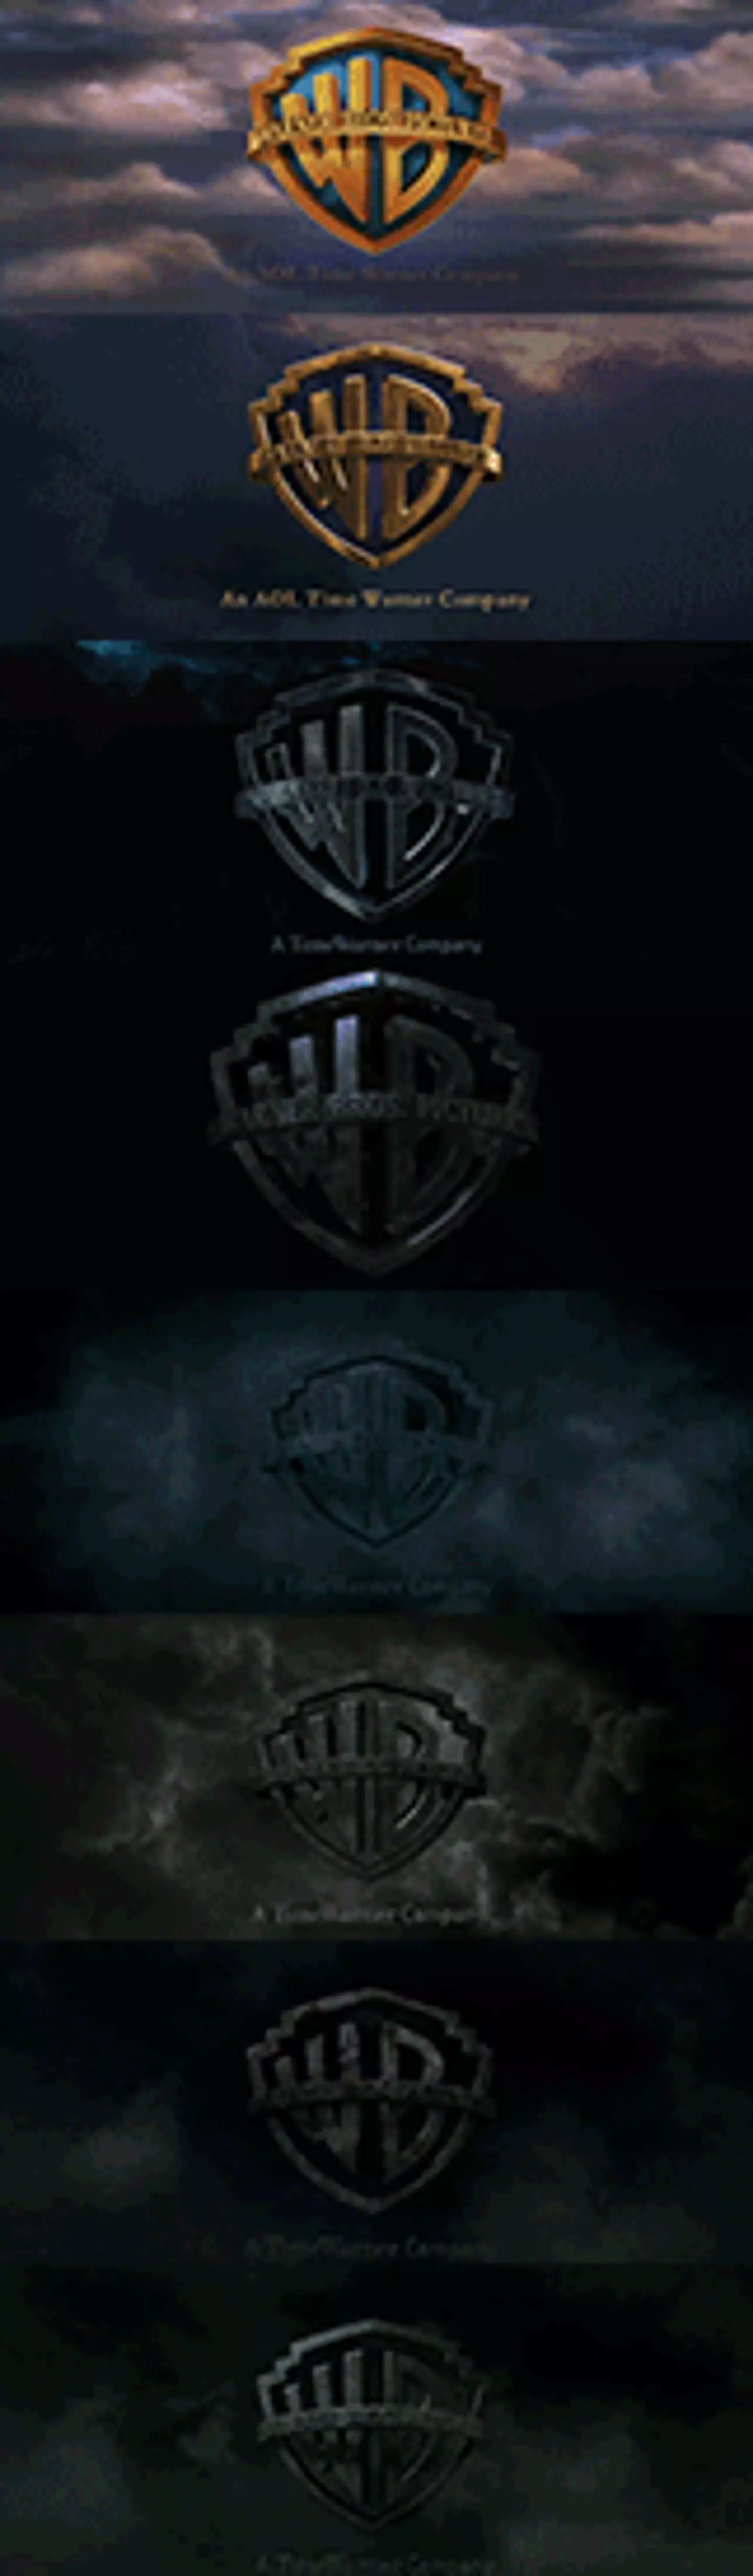 The Warner Bros. logo gets darker and darker with each movie.